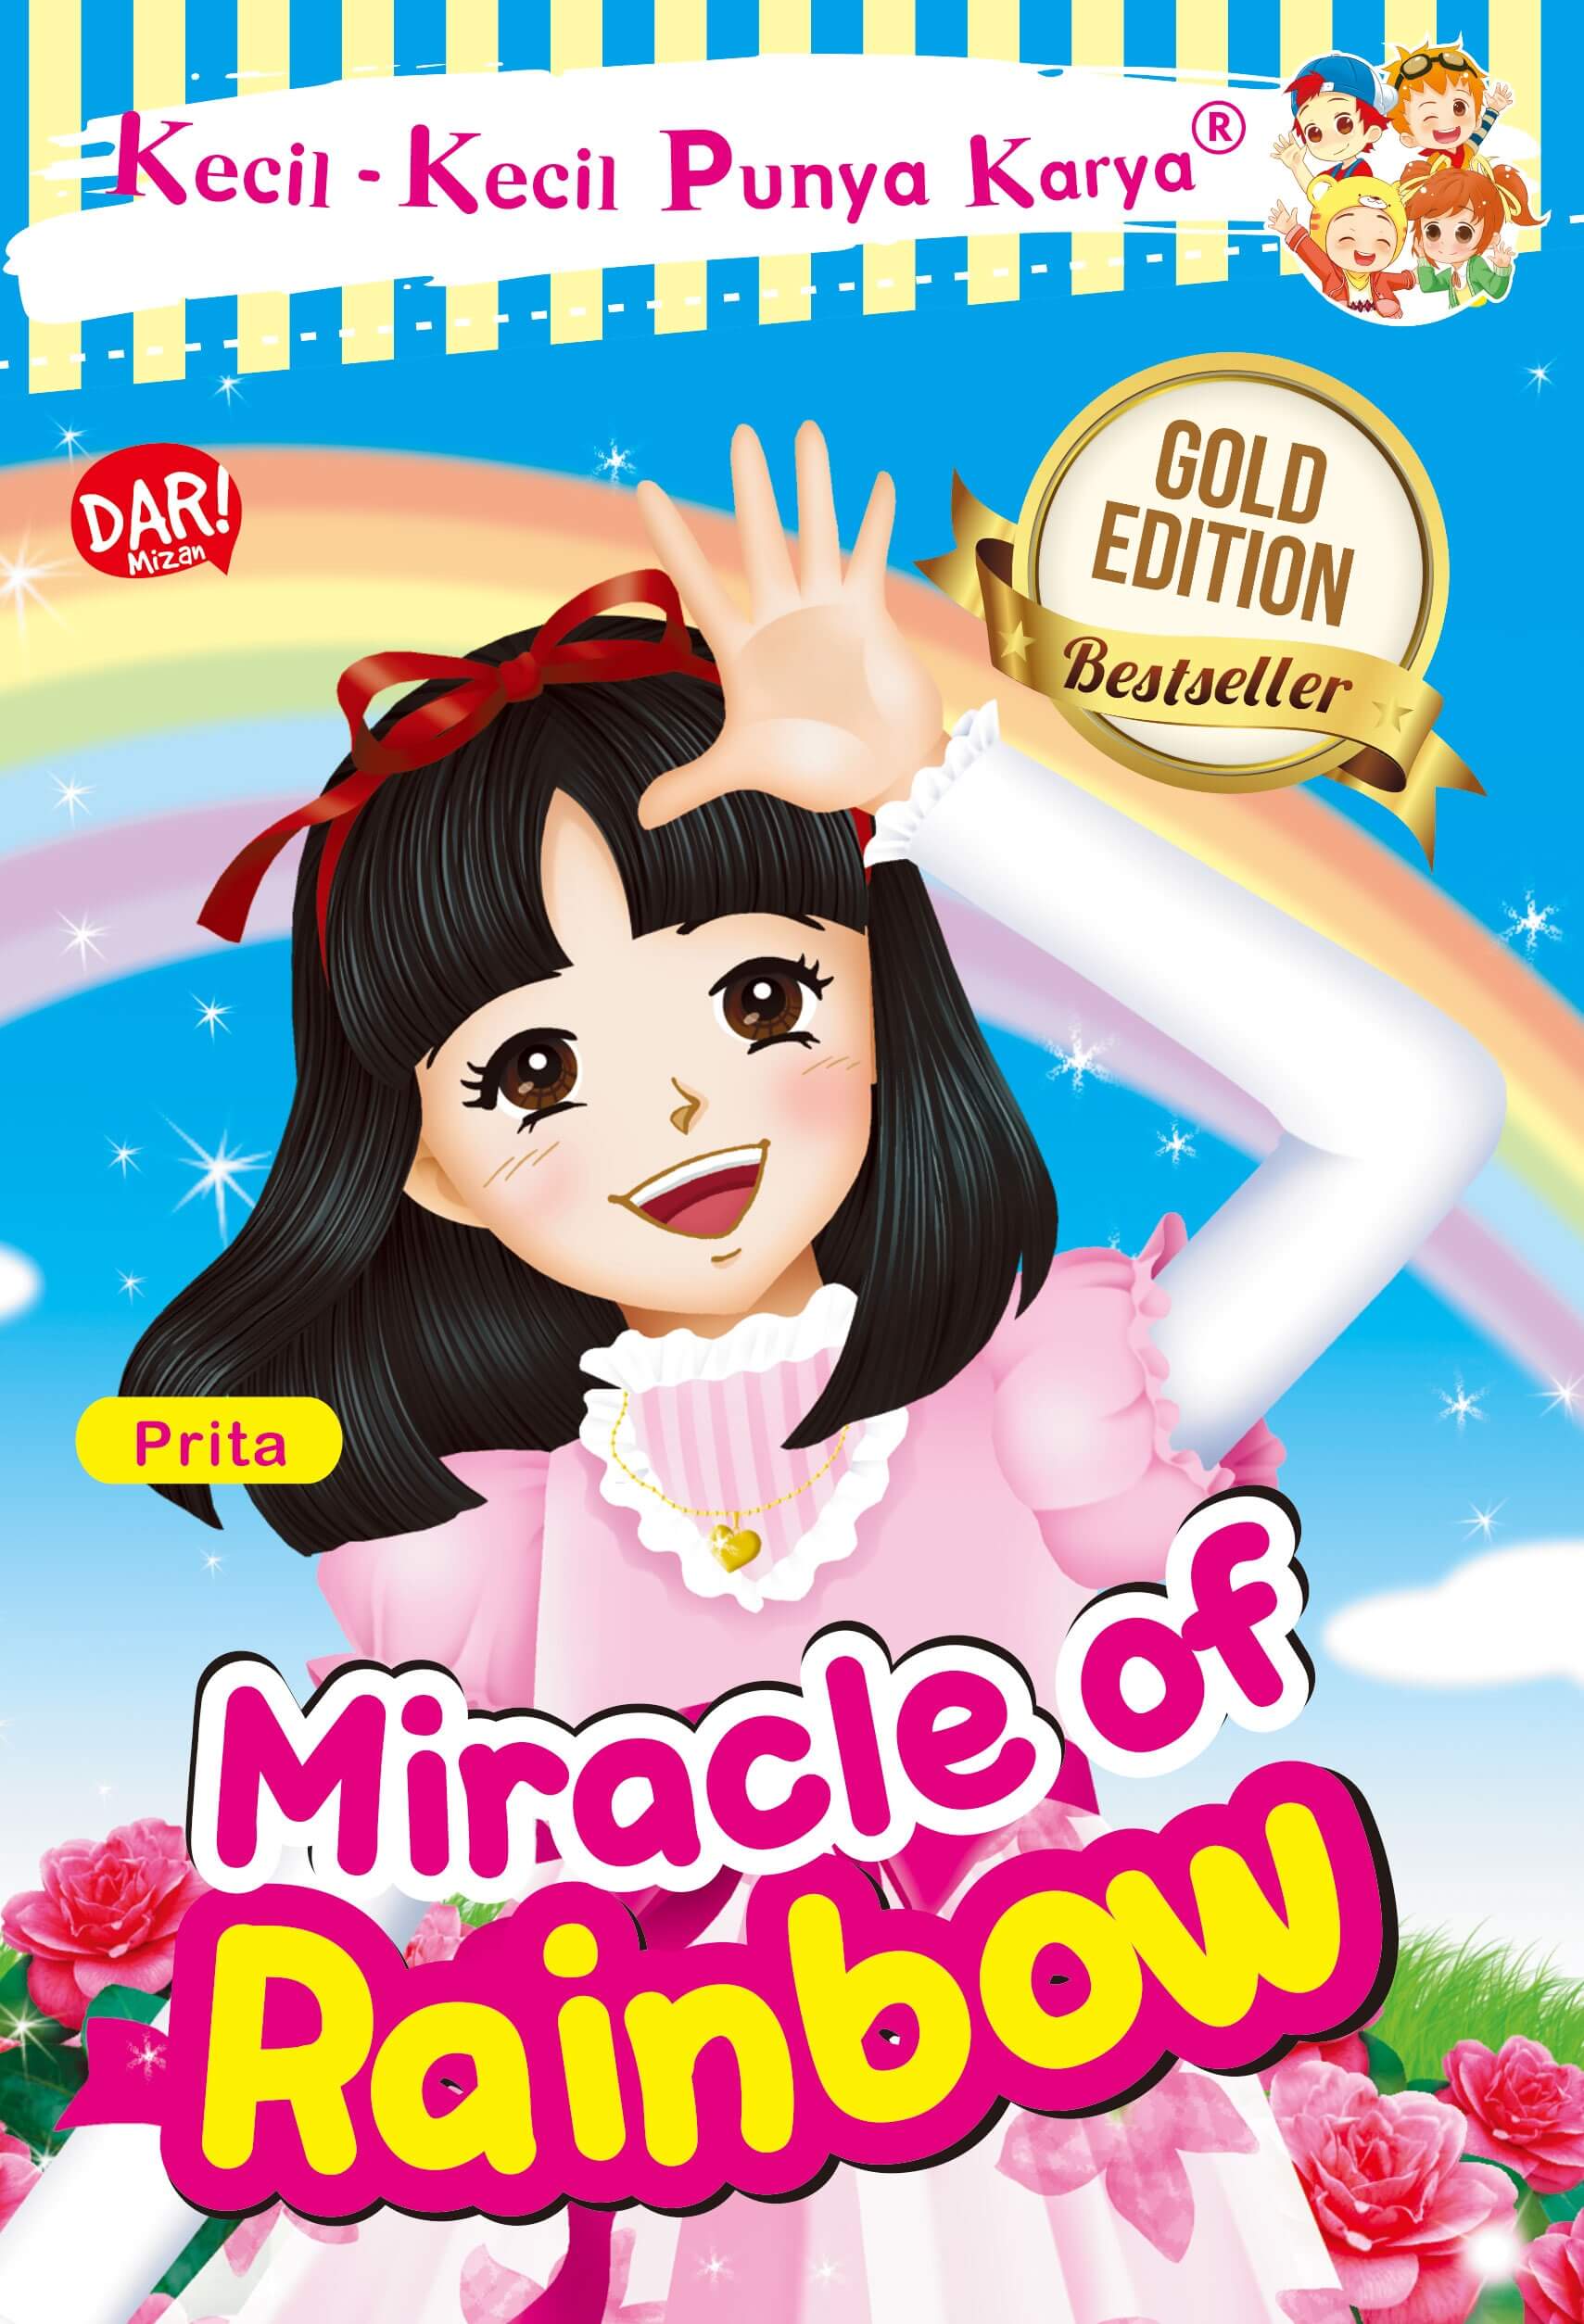 Kecil-kecil punya karya : miracle of rainbow (gold edition)